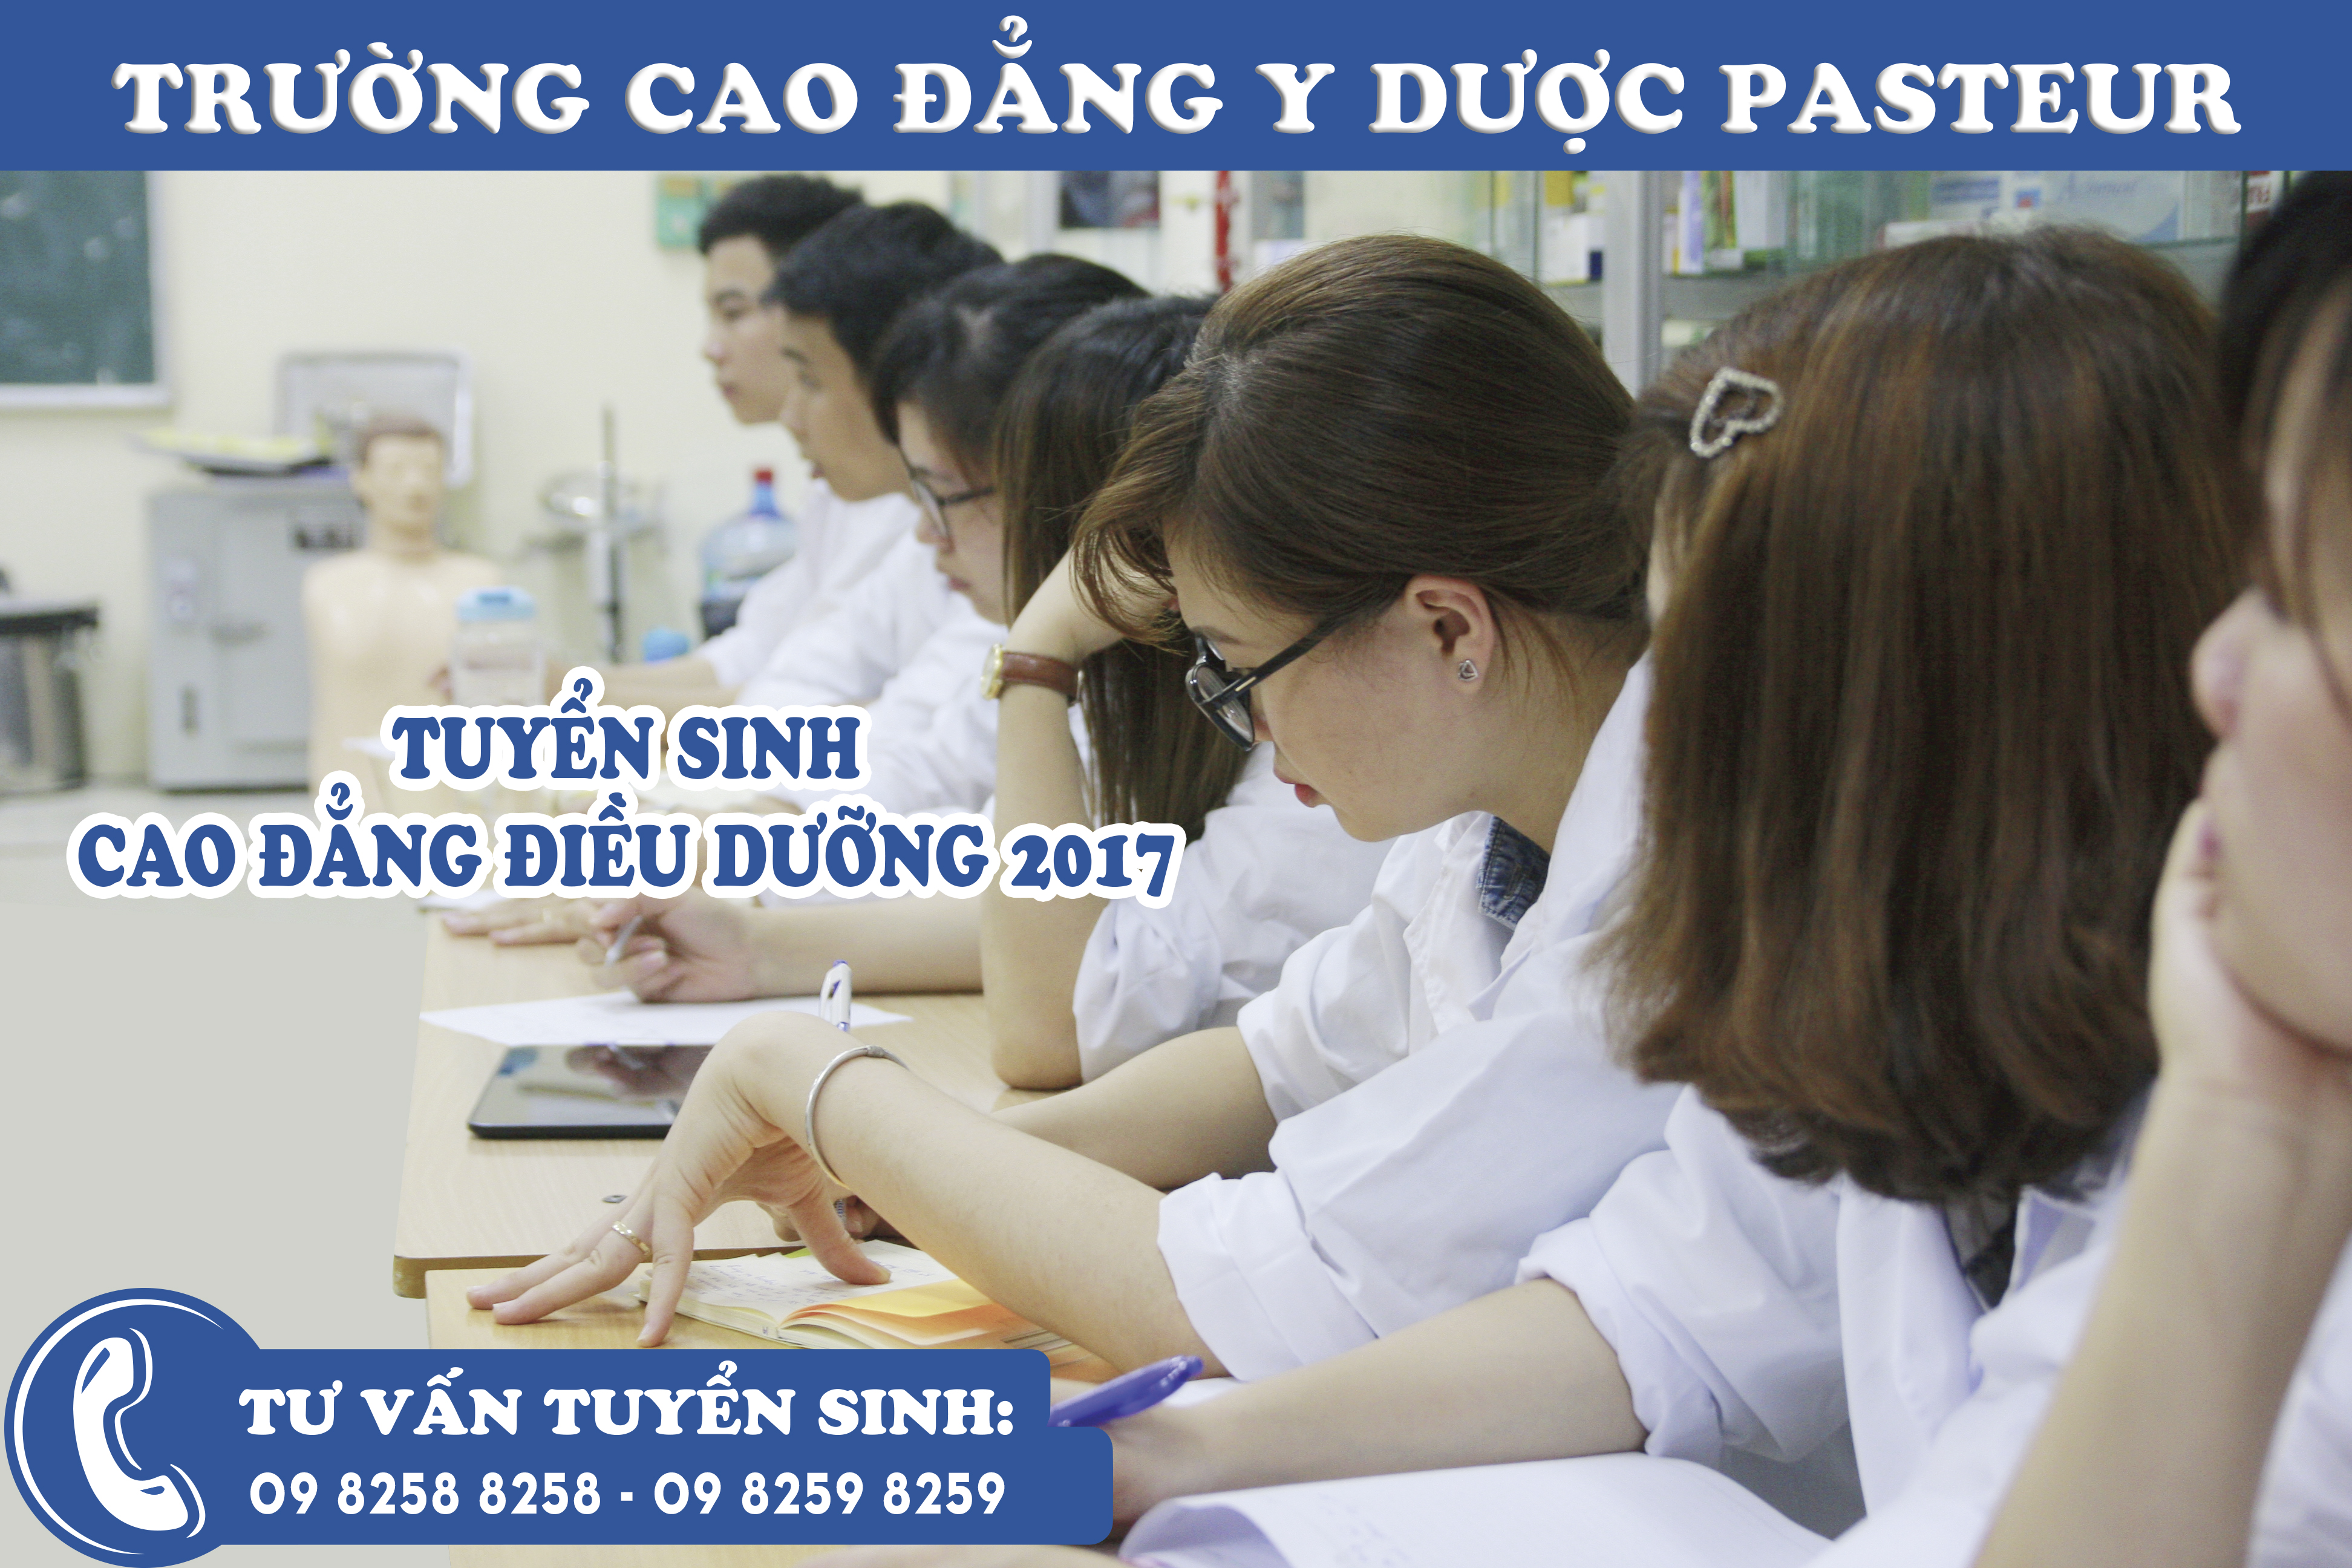 Nên theo học Cao đẳng Dược nào chất lượng tại Hà Nội?